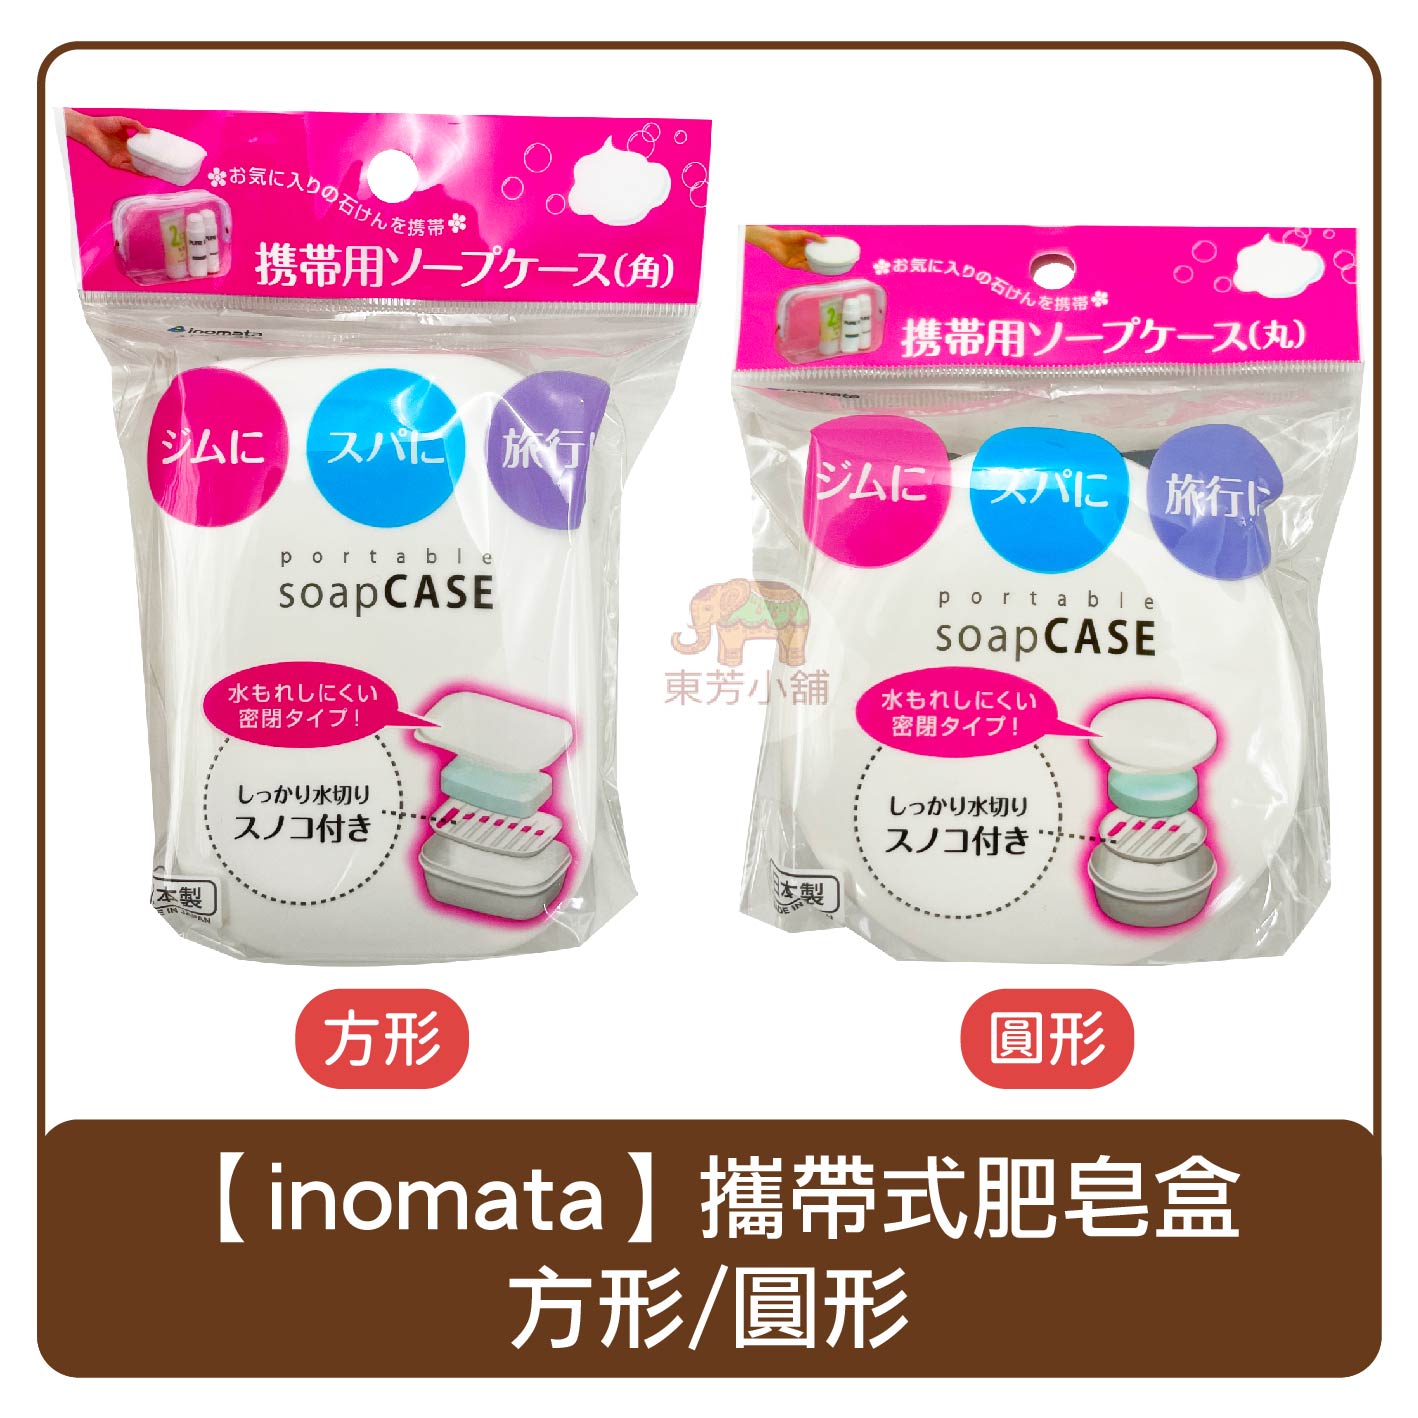 日本 inomata 攜帶式肥皂盒 圓形/方形 香皂盒 旅行用 0